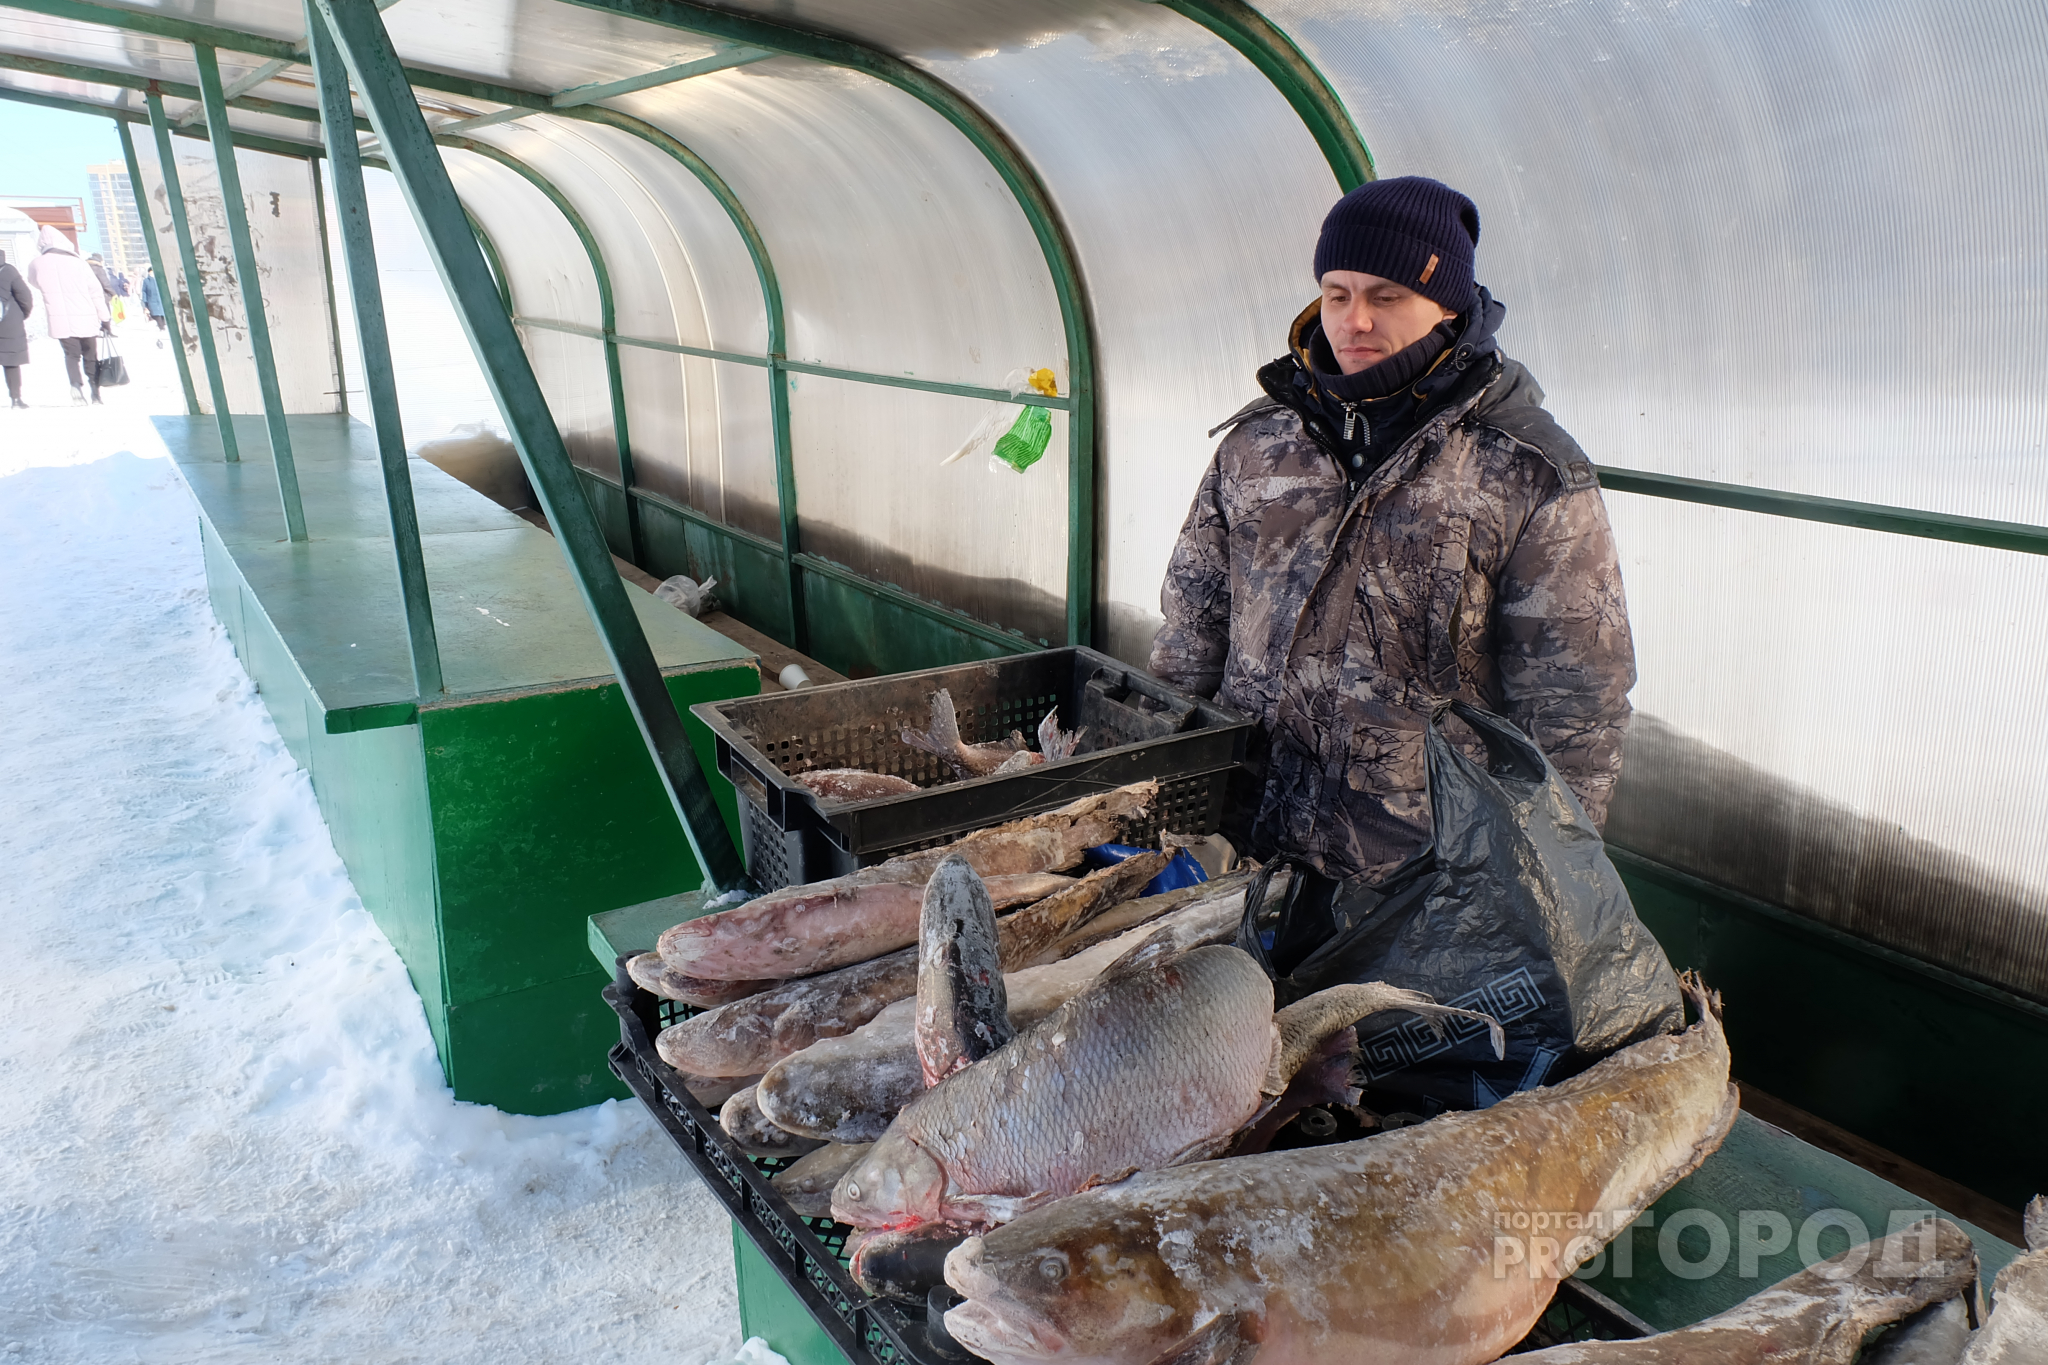 Рыбак второй раз попался чиновникам за торговлю уловом: "У меня двое детей, а это единственный доход"